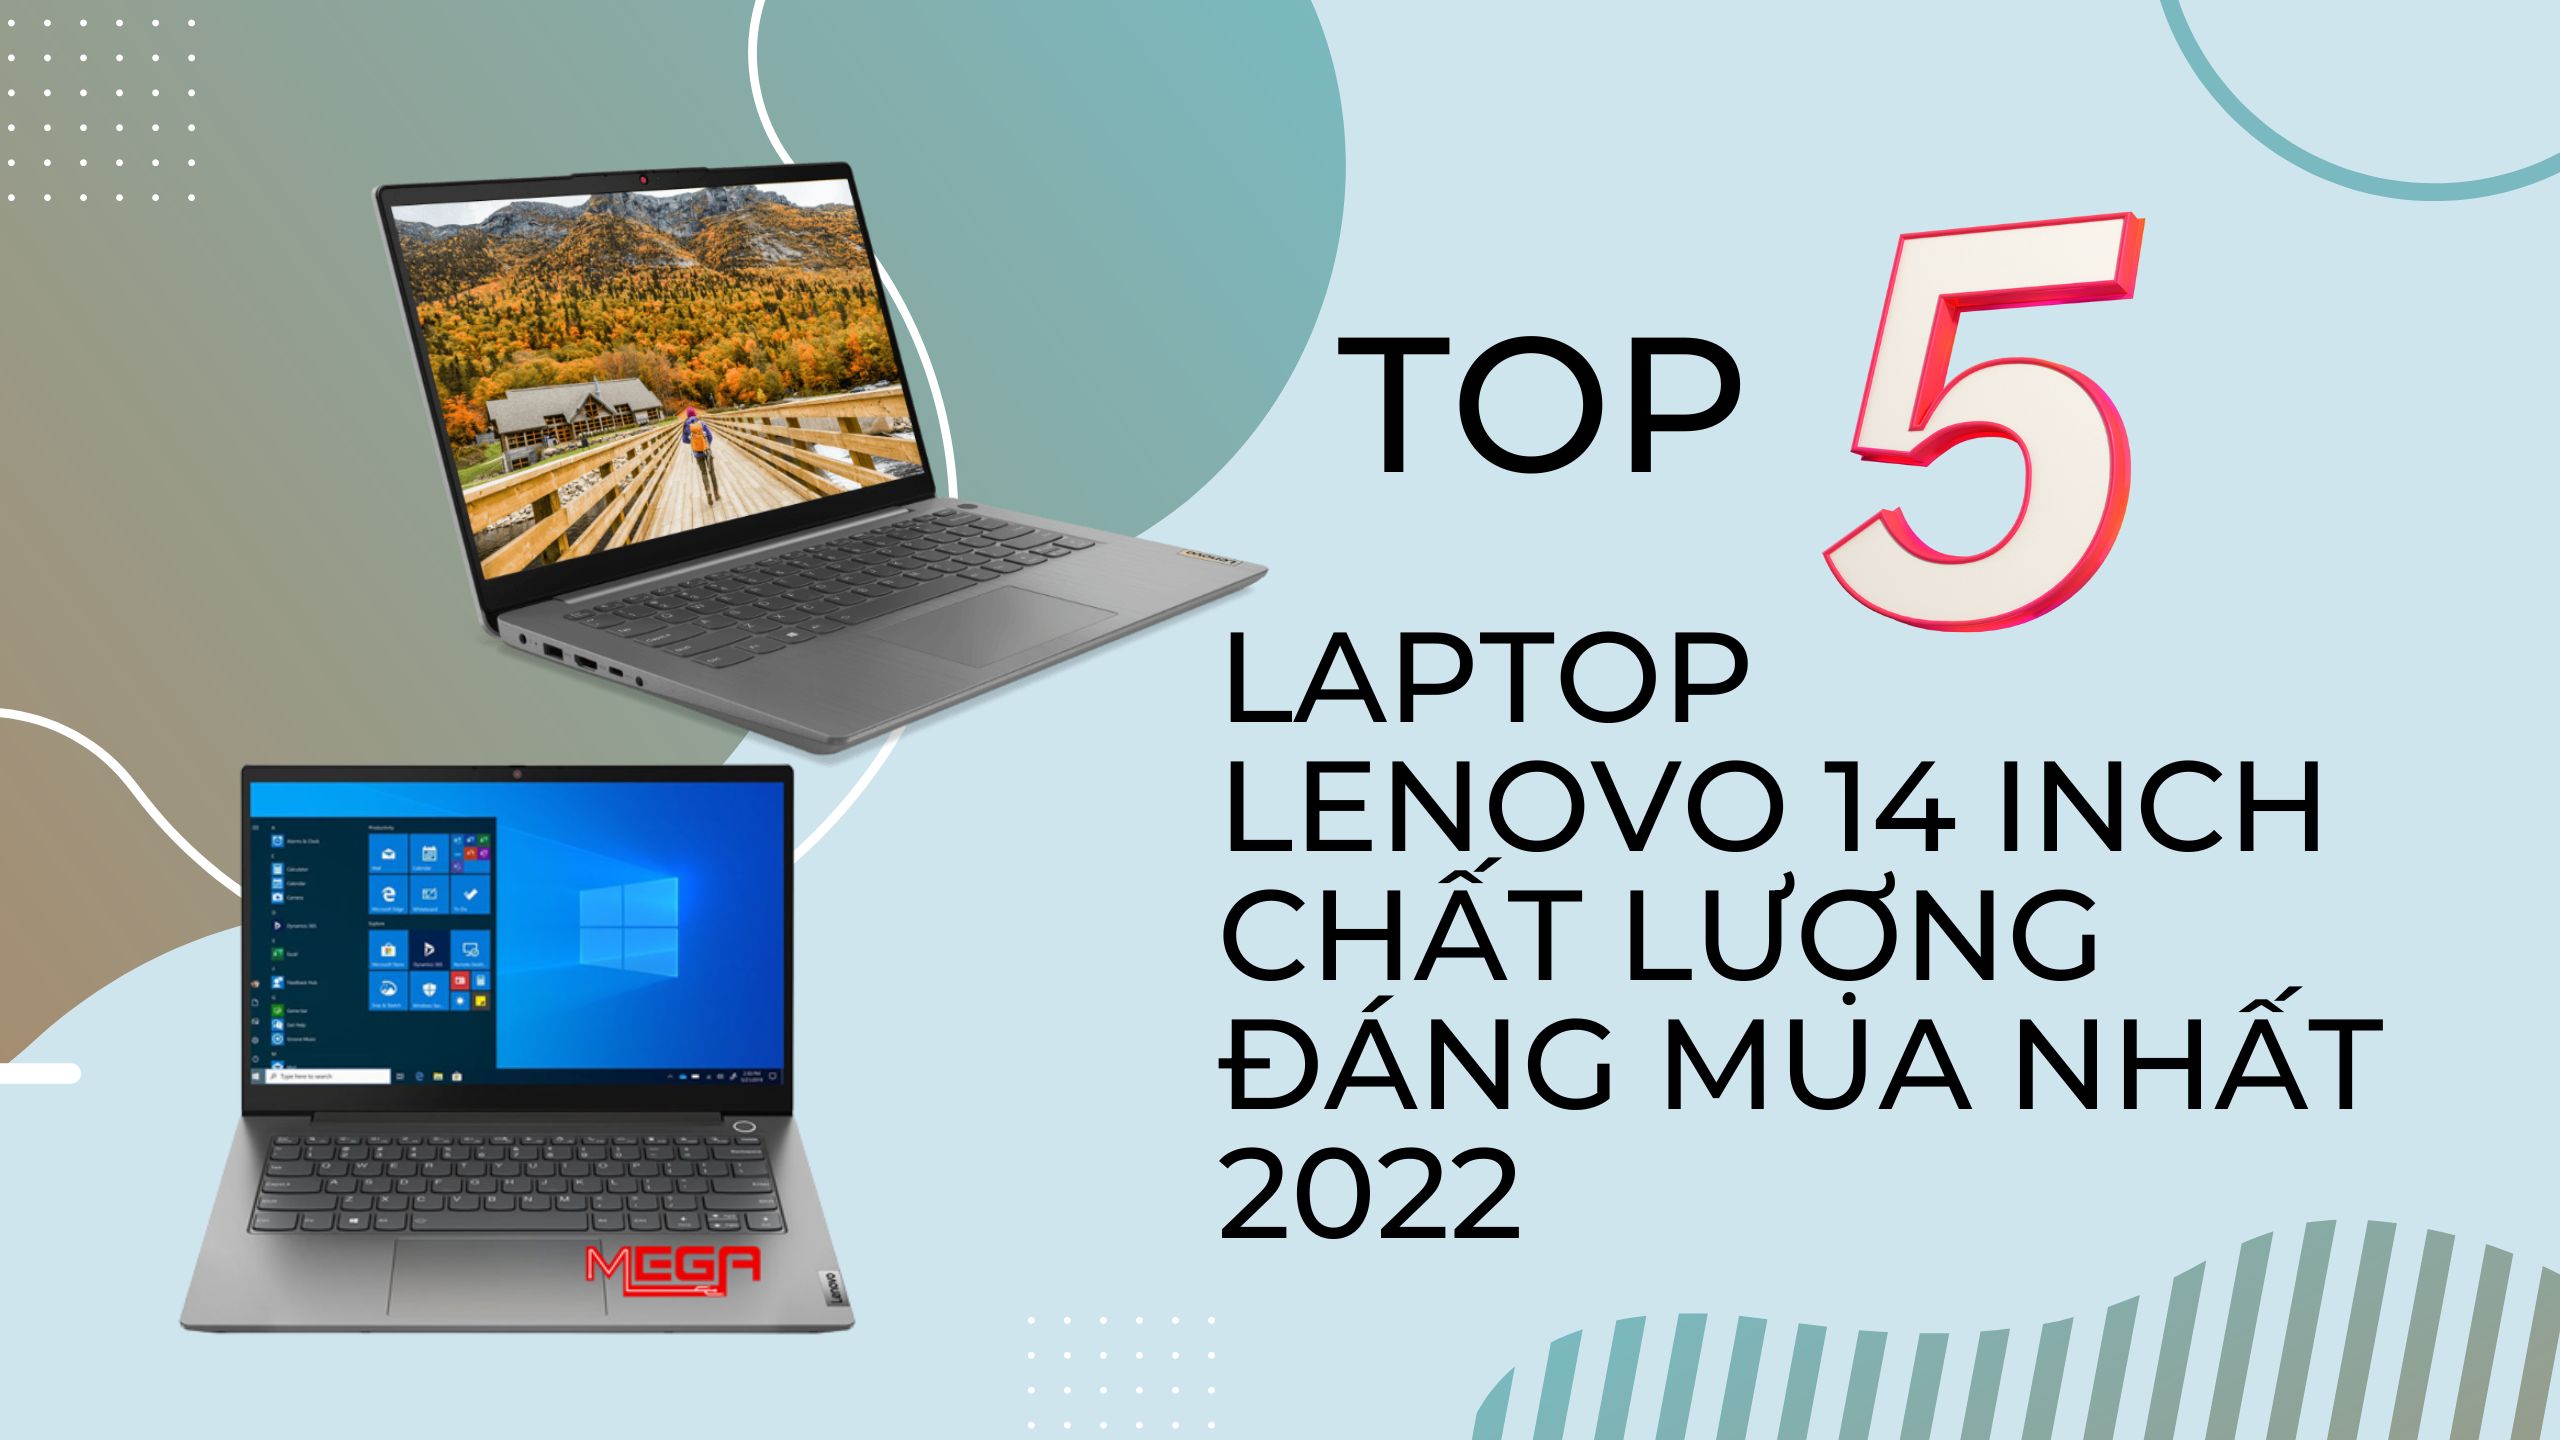 Top 5 laptop Lenovo 14 inch chất lượng, cấu hình ổn định đáng mua nhất 2023